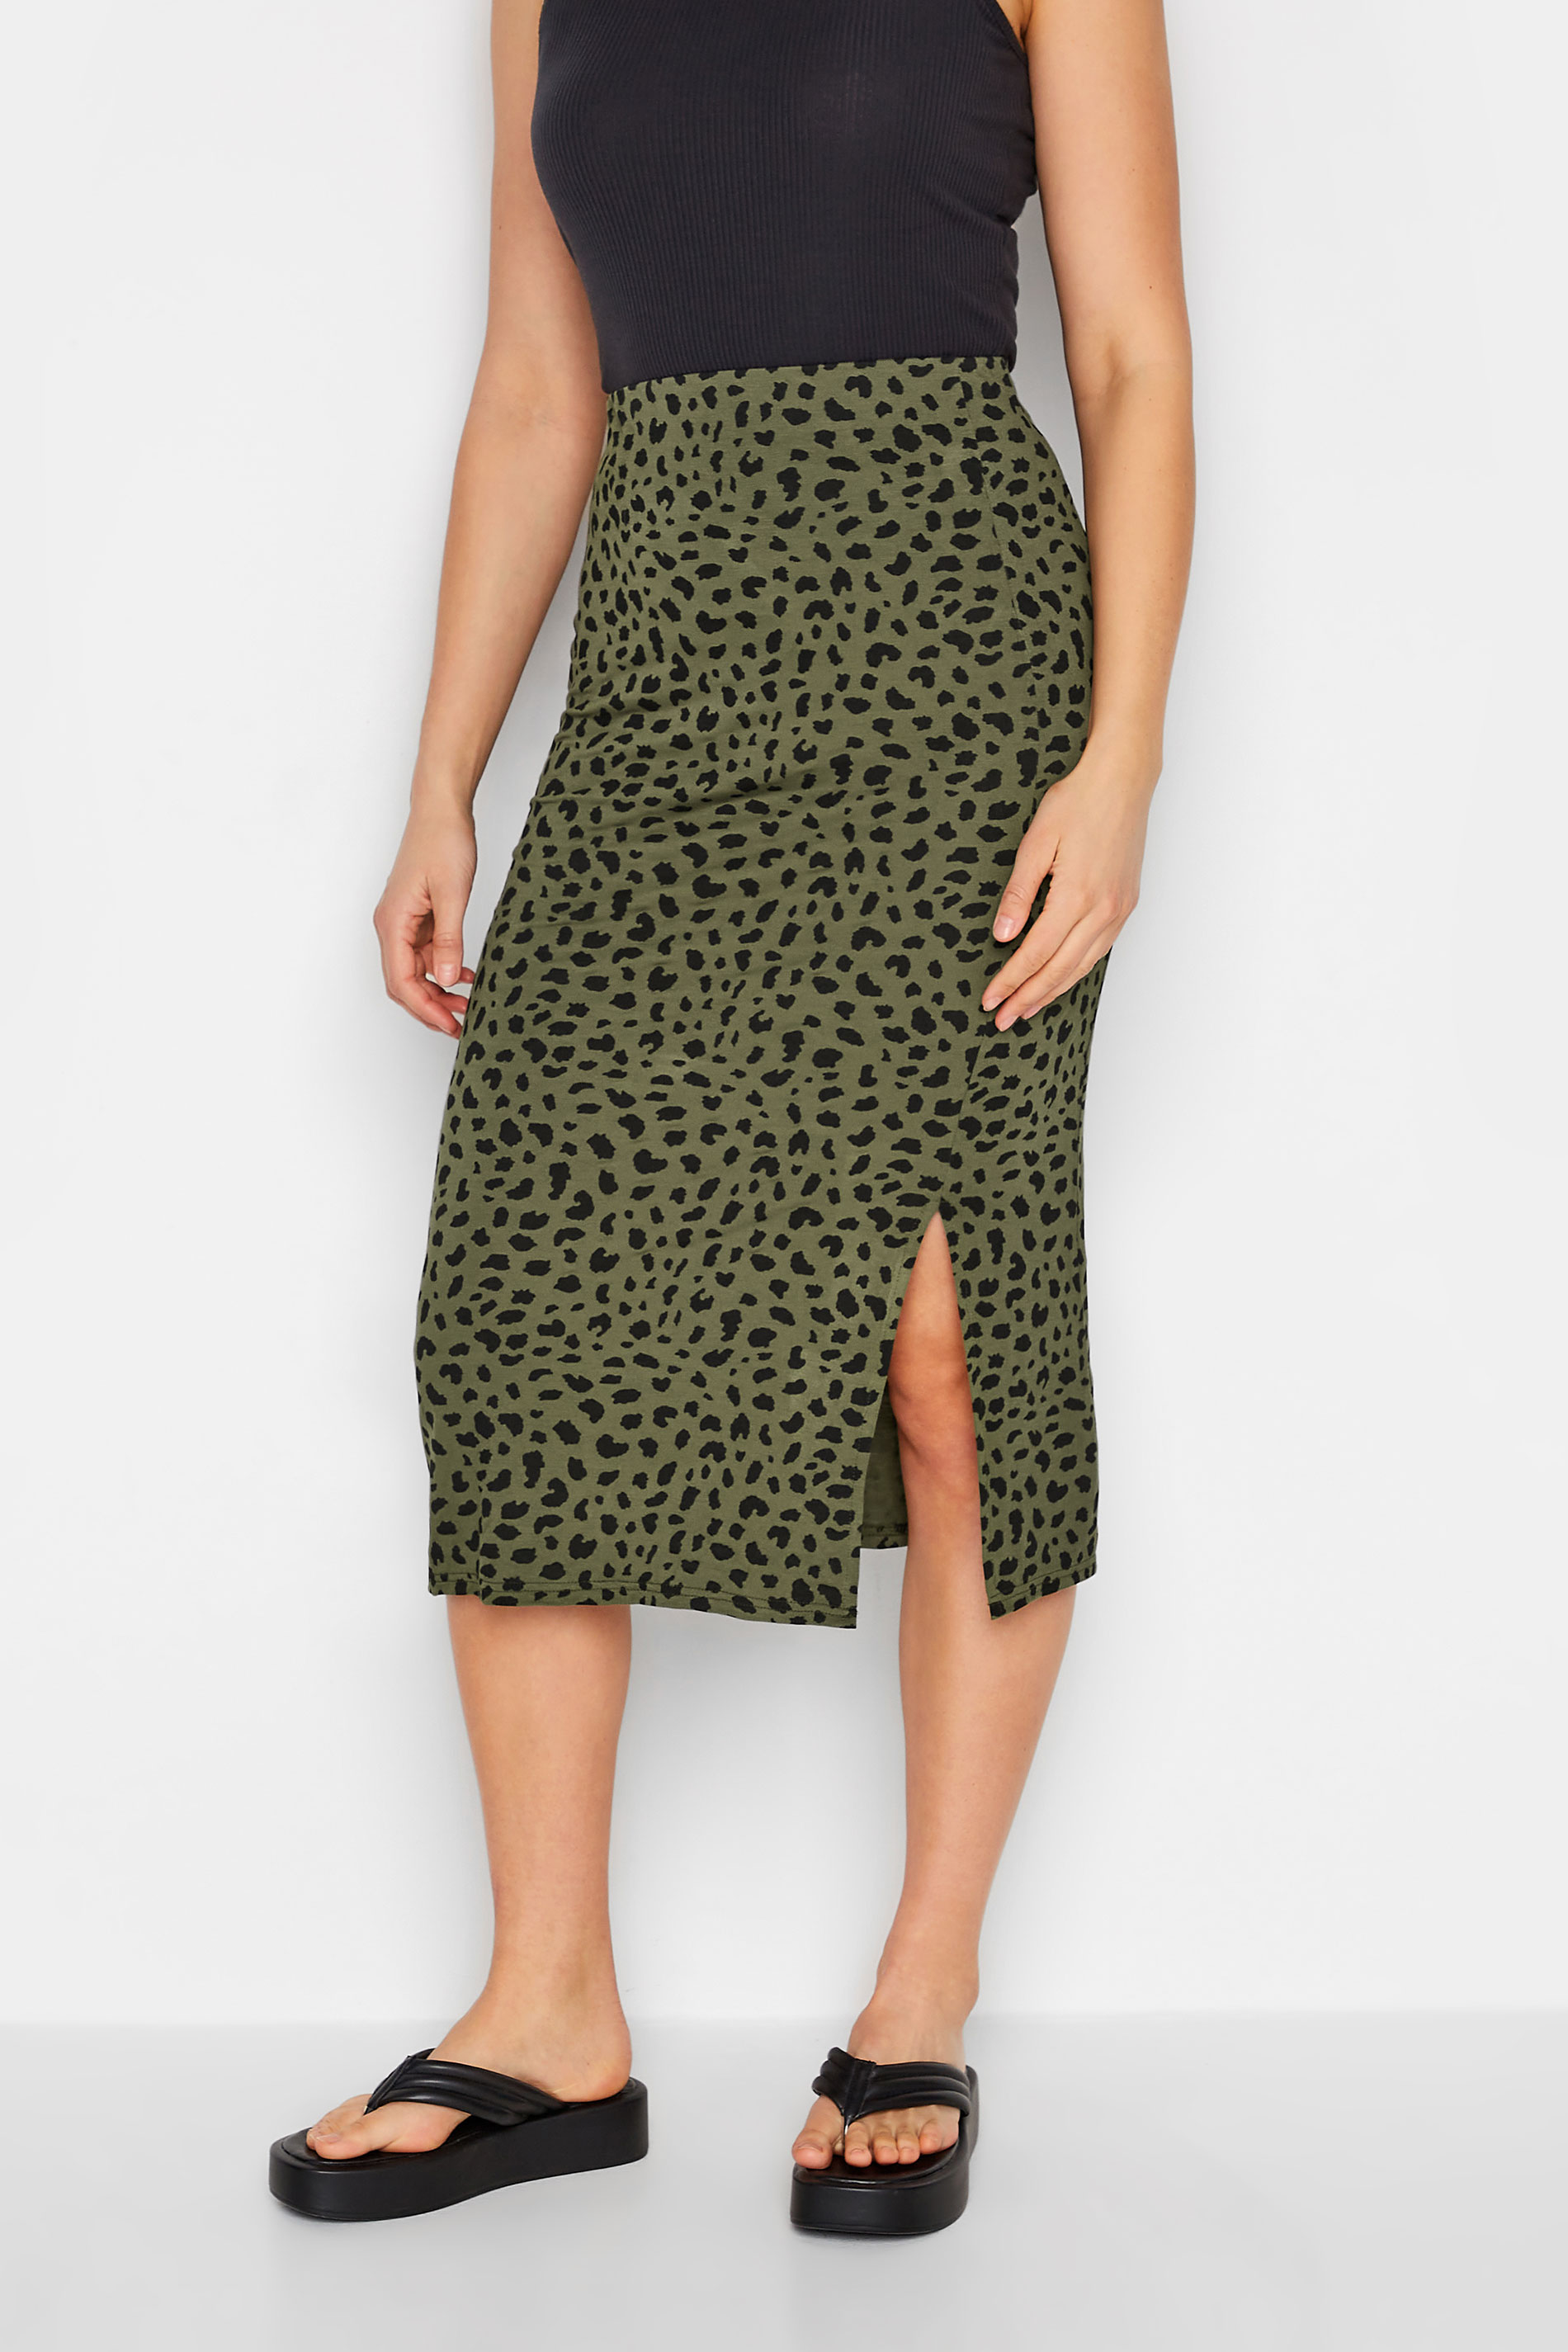 LTS Tall Women's Khaki Green Dalmatian Print Midi Skirt | Long Tall Sally 1